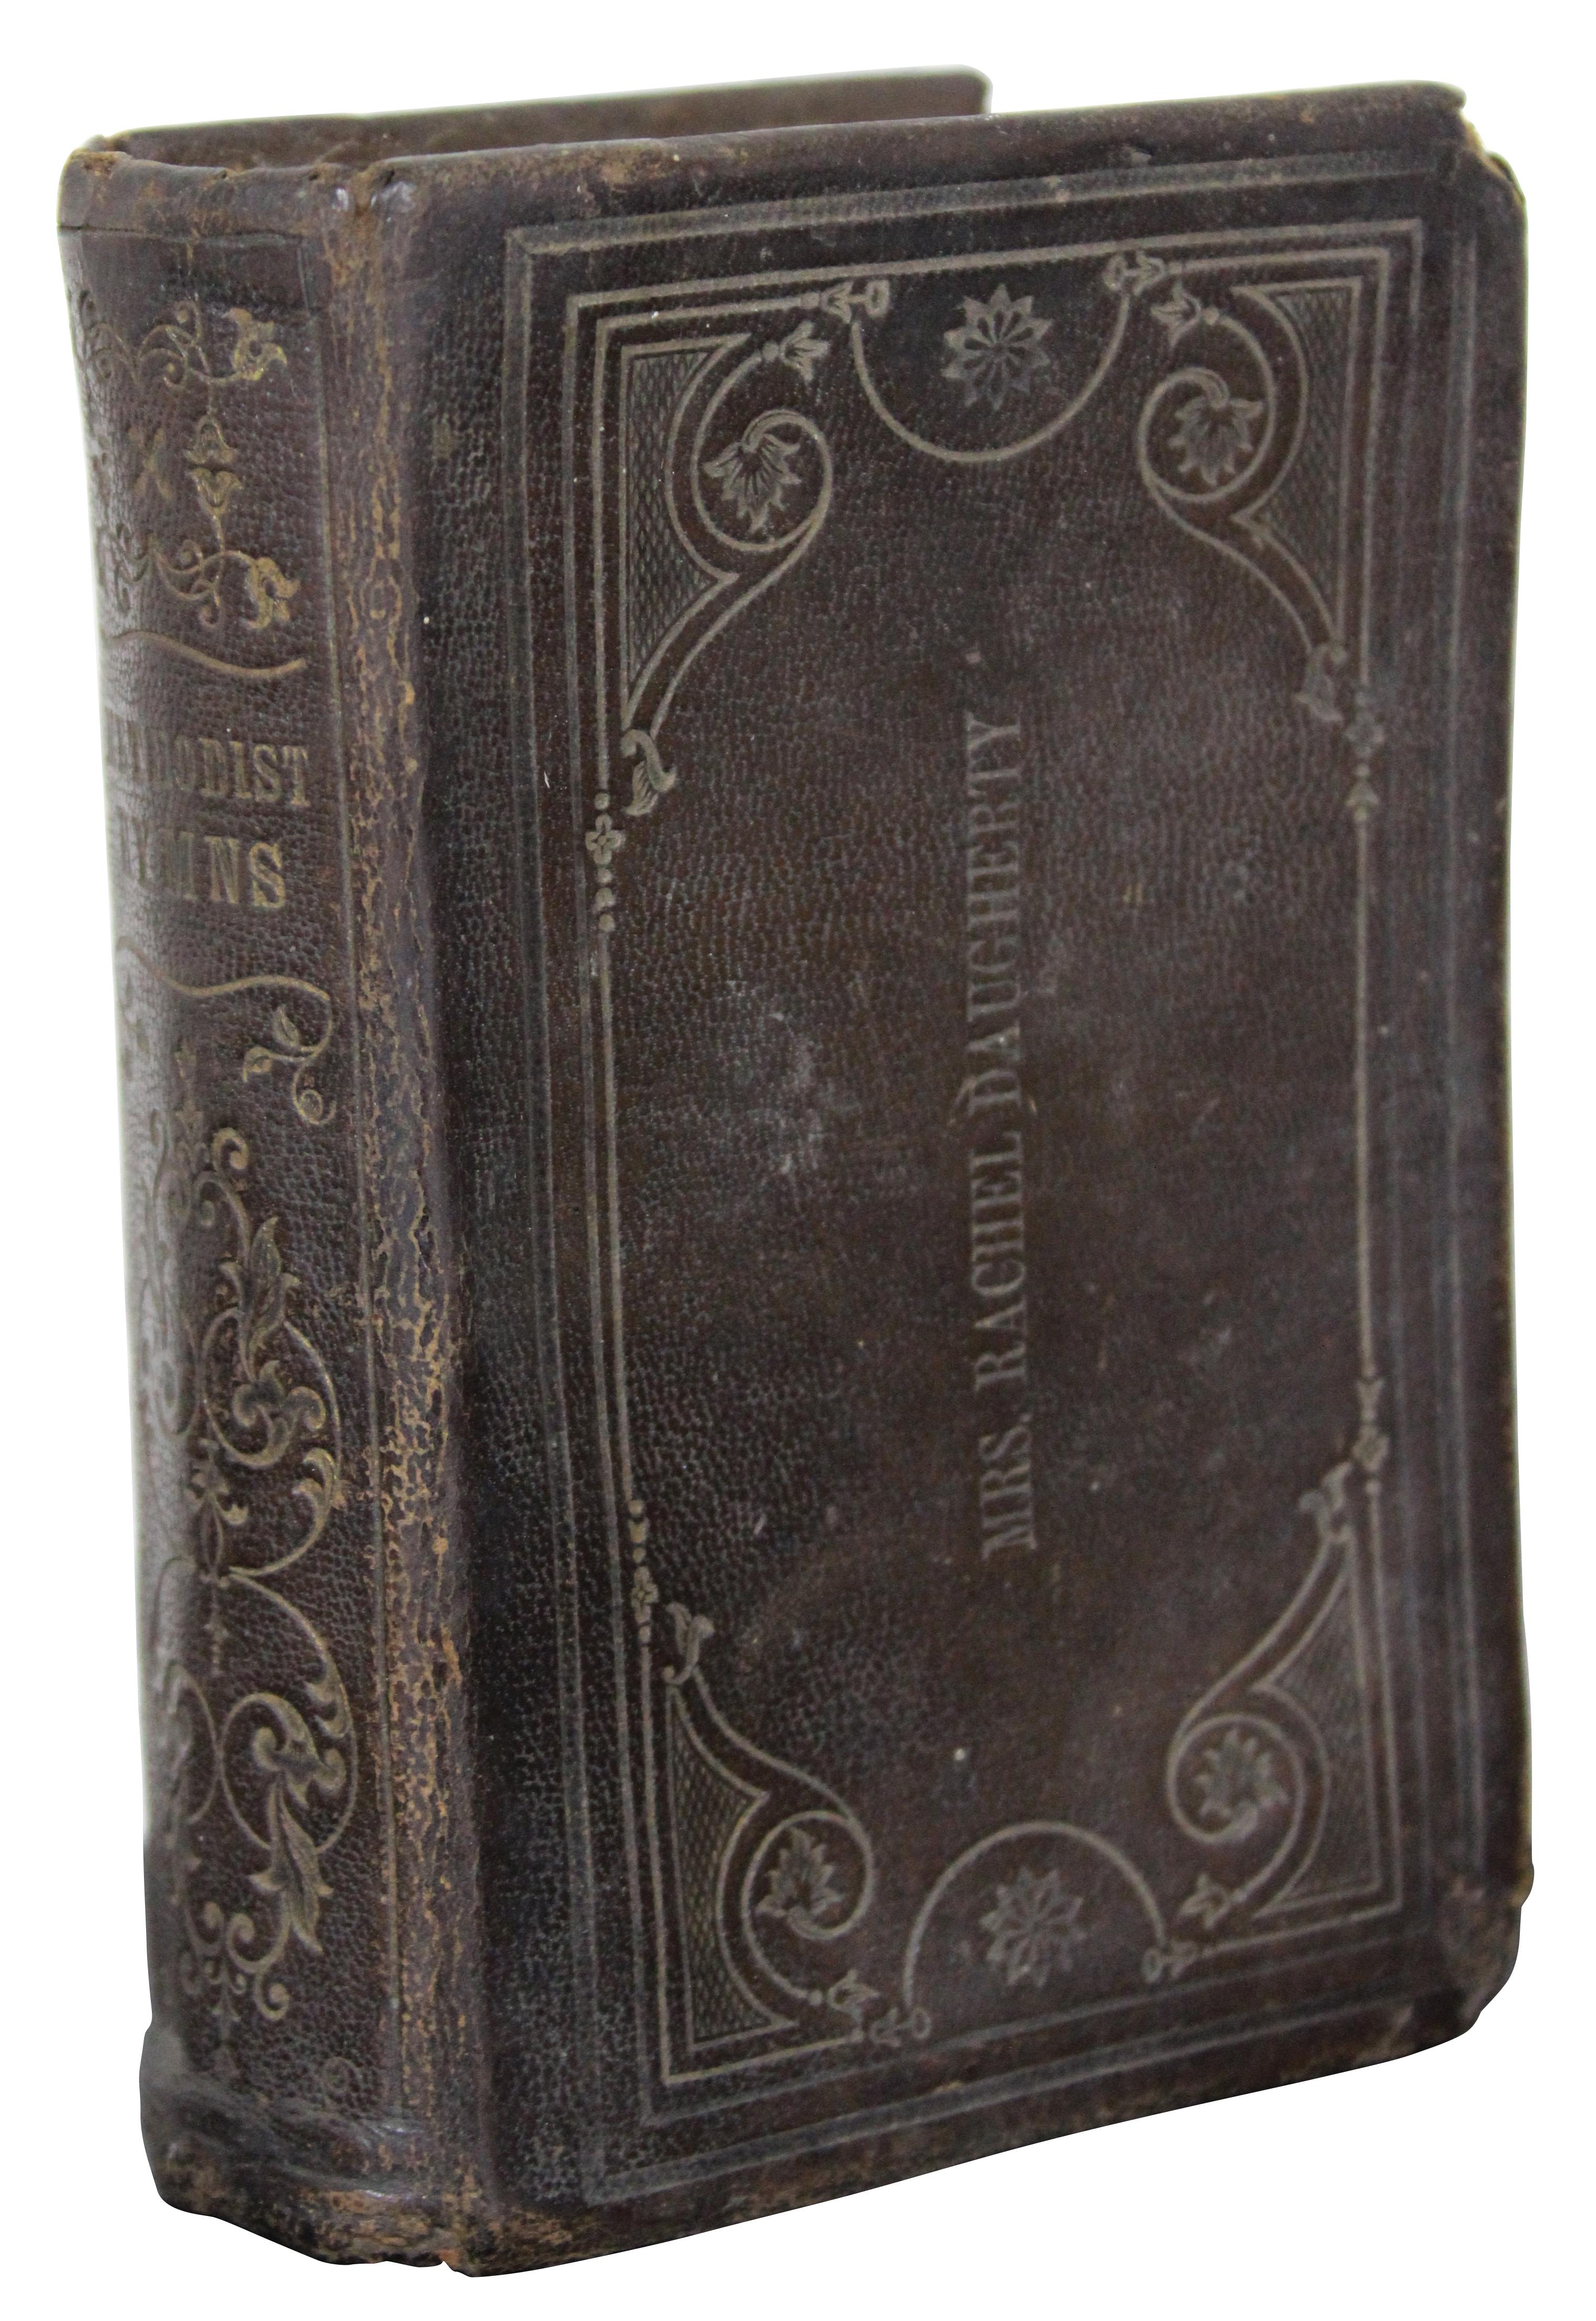 Zwei antike christliche Gesangbücher aus der Mitte bis zum Ende des 19. Jahrhunderts, ein in Leder gebundenes Buch mit methodistischen Liedern, in das der Name von Mrs. Rachel Daugherty eingedruckt ist, und ein in blaues Tuch gebundenes